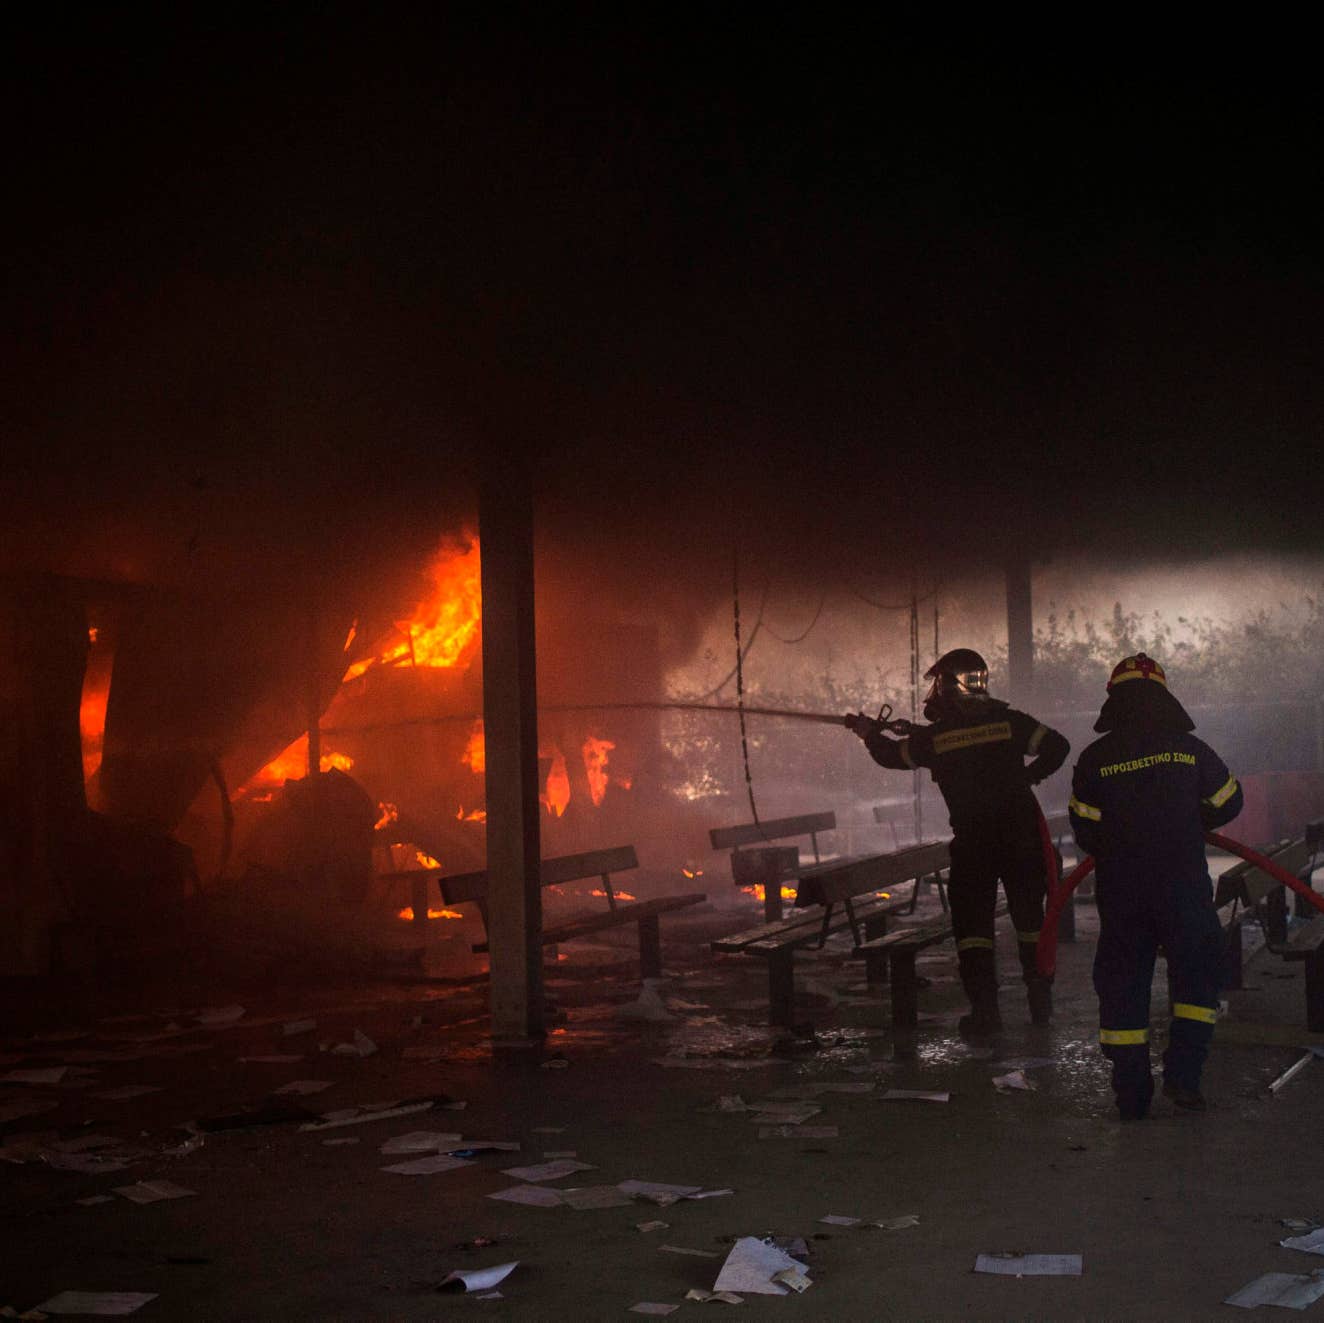 חשד להצתה: שריפה החריבה את מחנה הפליטים הגדול ביותר ביוון - אירופה - הארץ